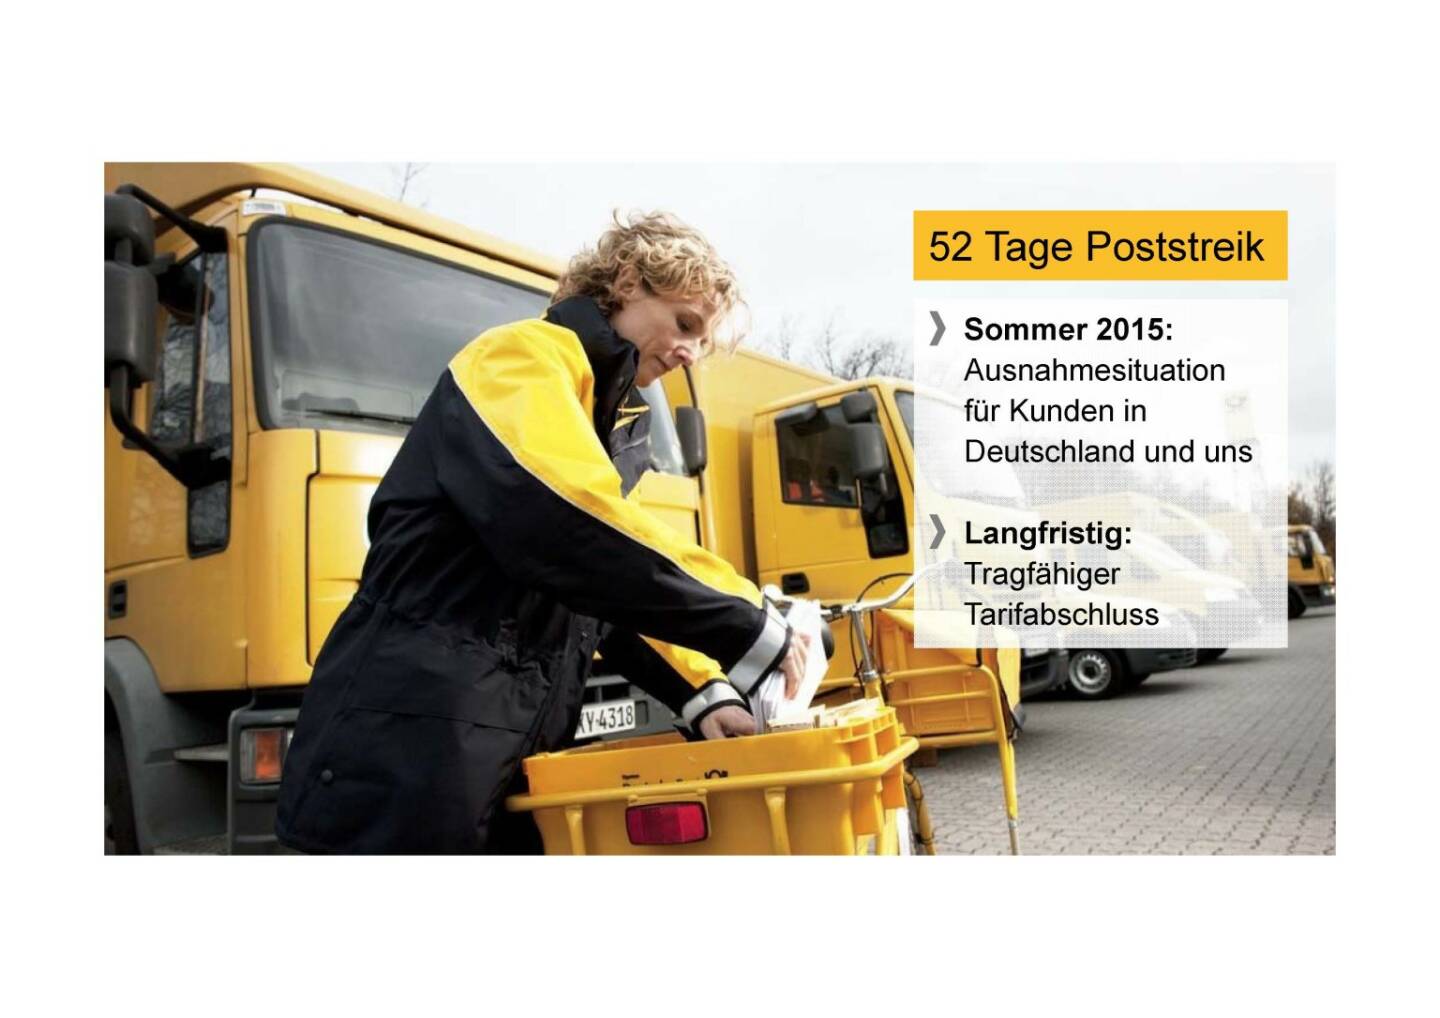 Deutsche Post - 52 Tage Poststreik